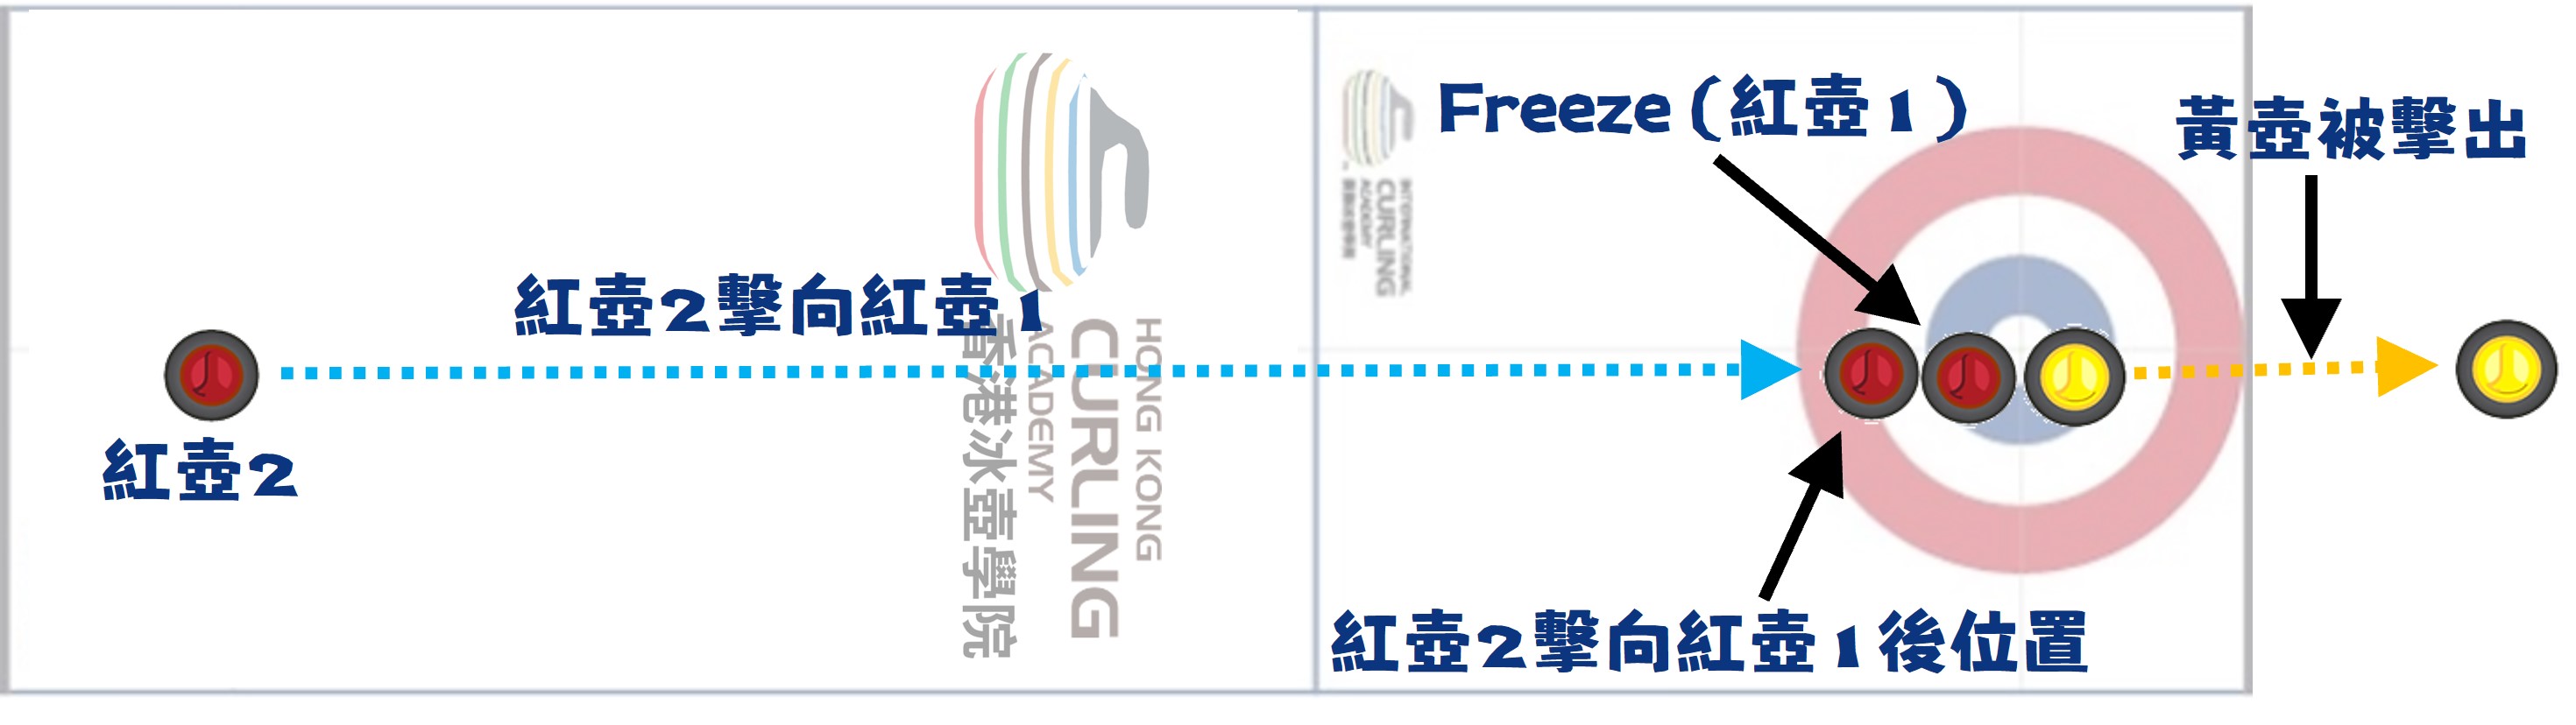 冰壺-Freeze